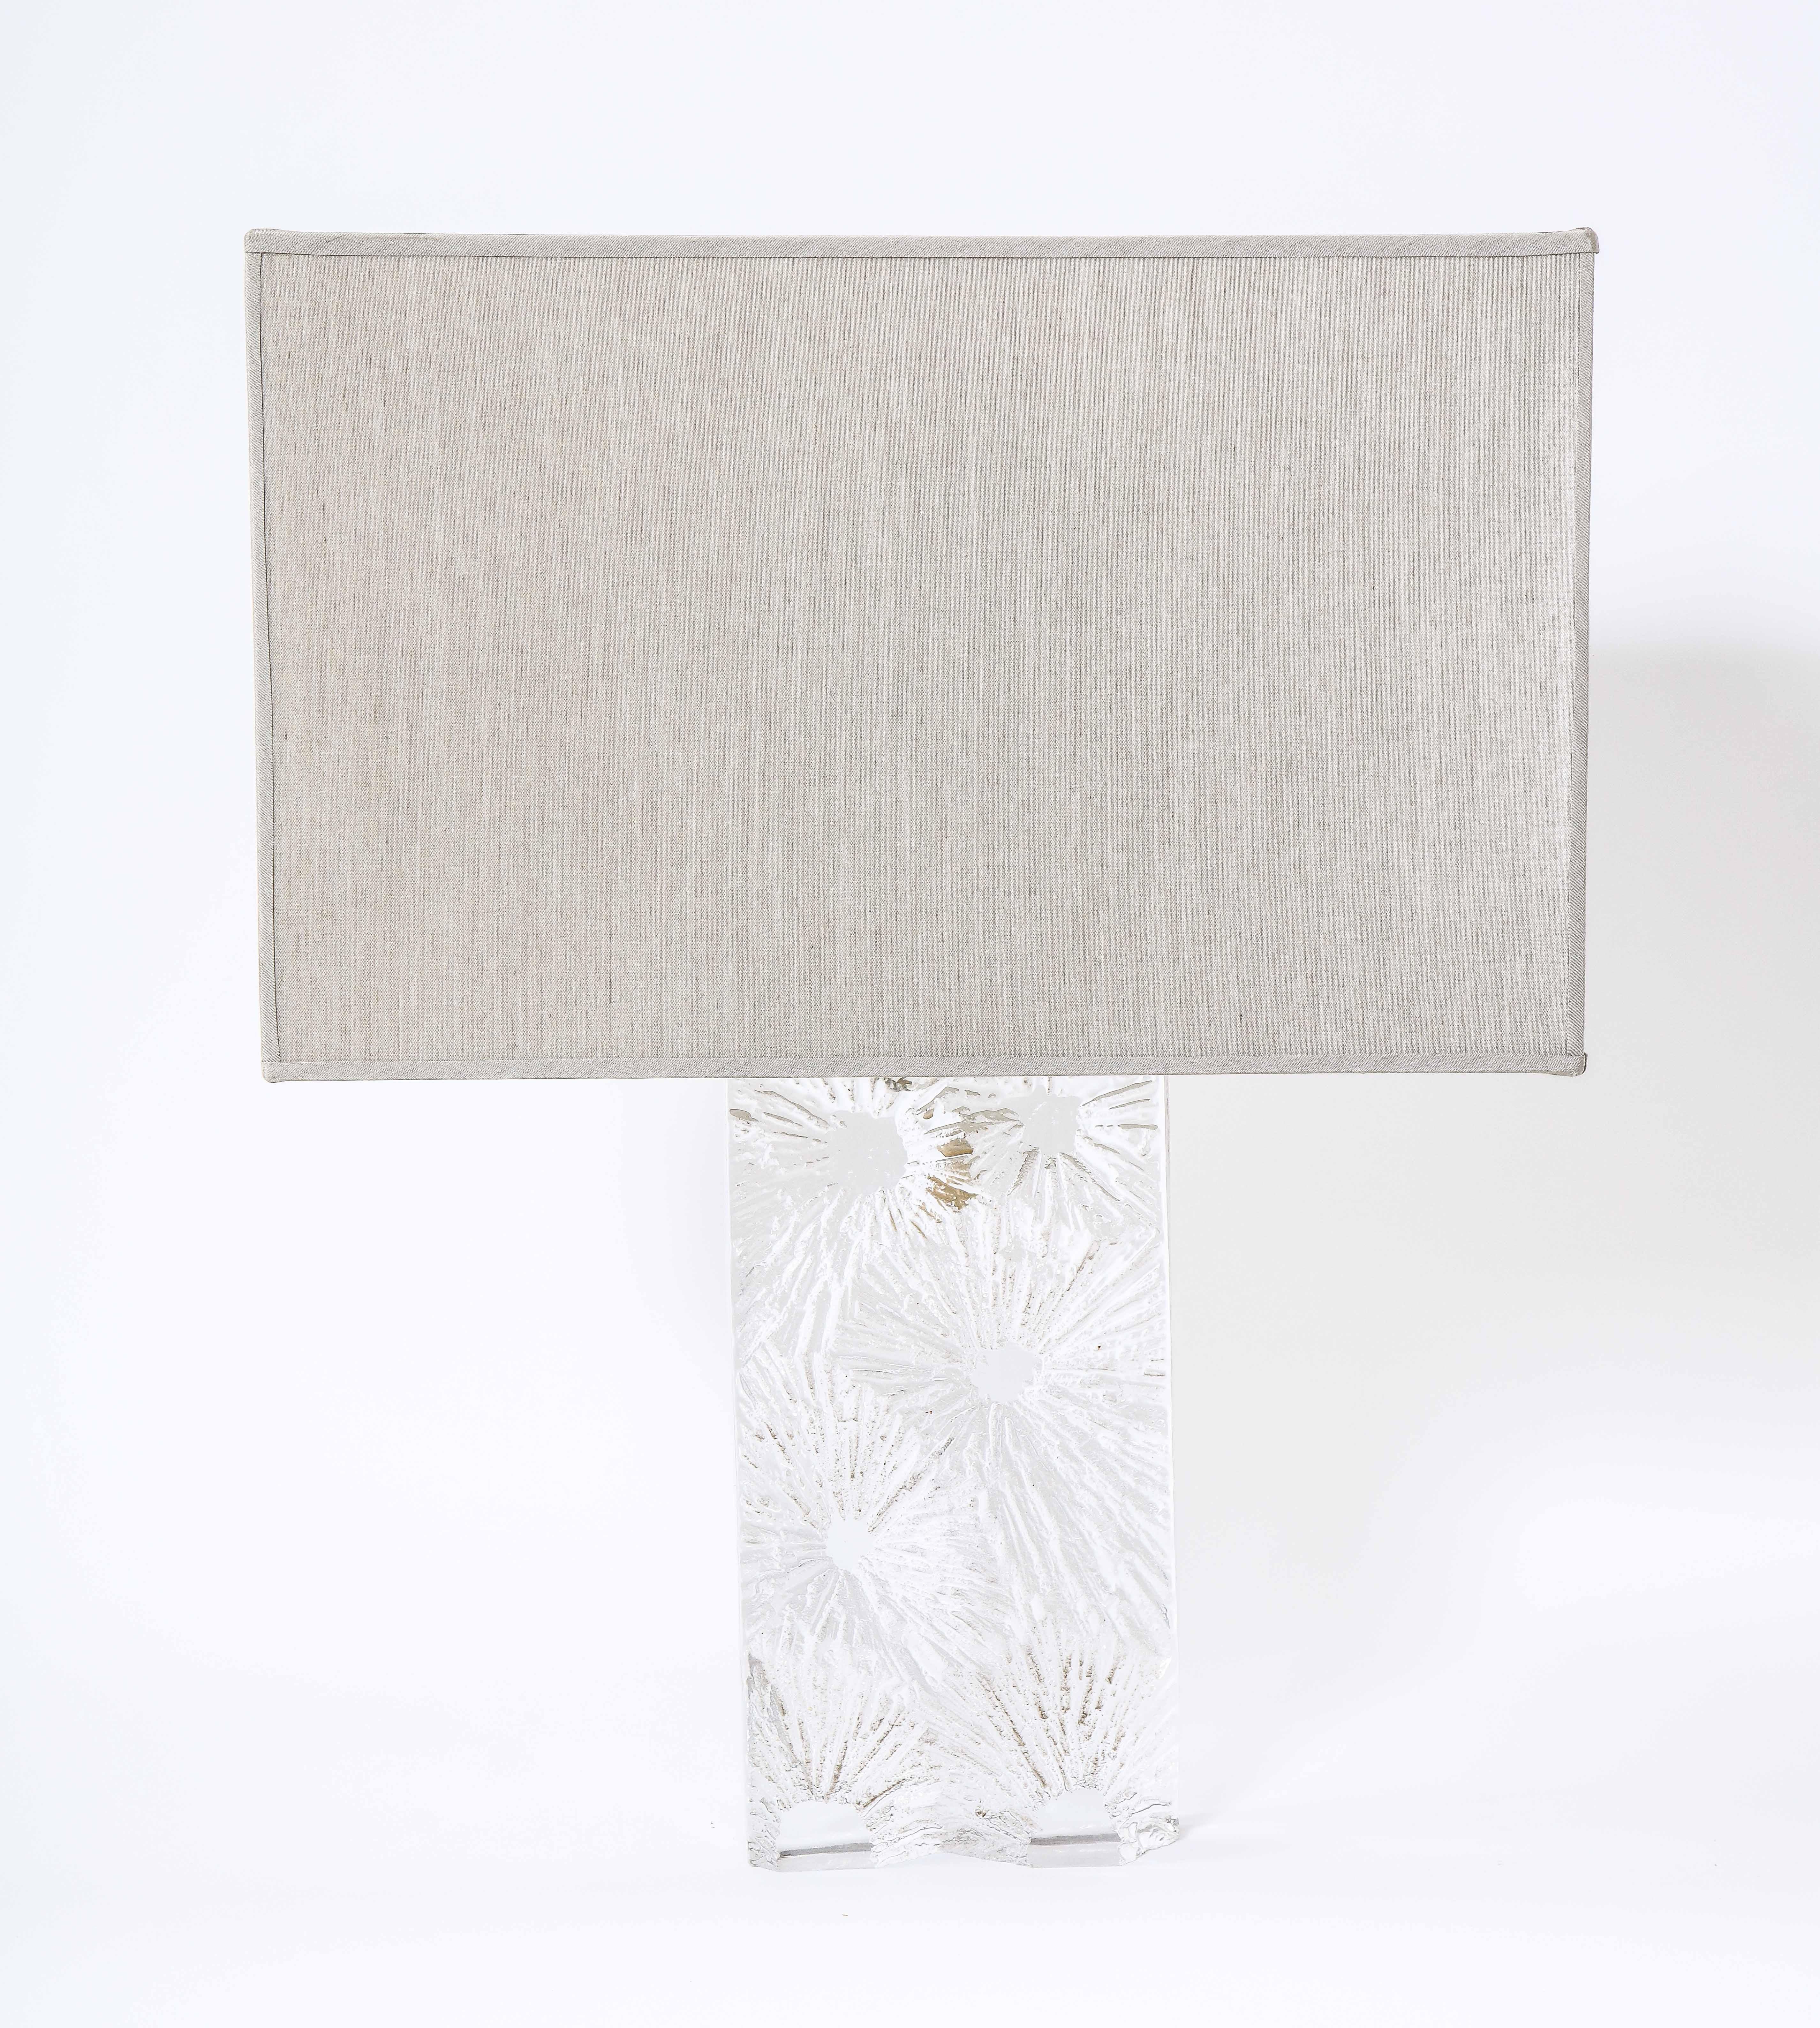 Lampe de table en cristal de Daum avec motif Chardon gravé à l'acide, signée sur le fond.

Recâblage et ombrage sur demande.